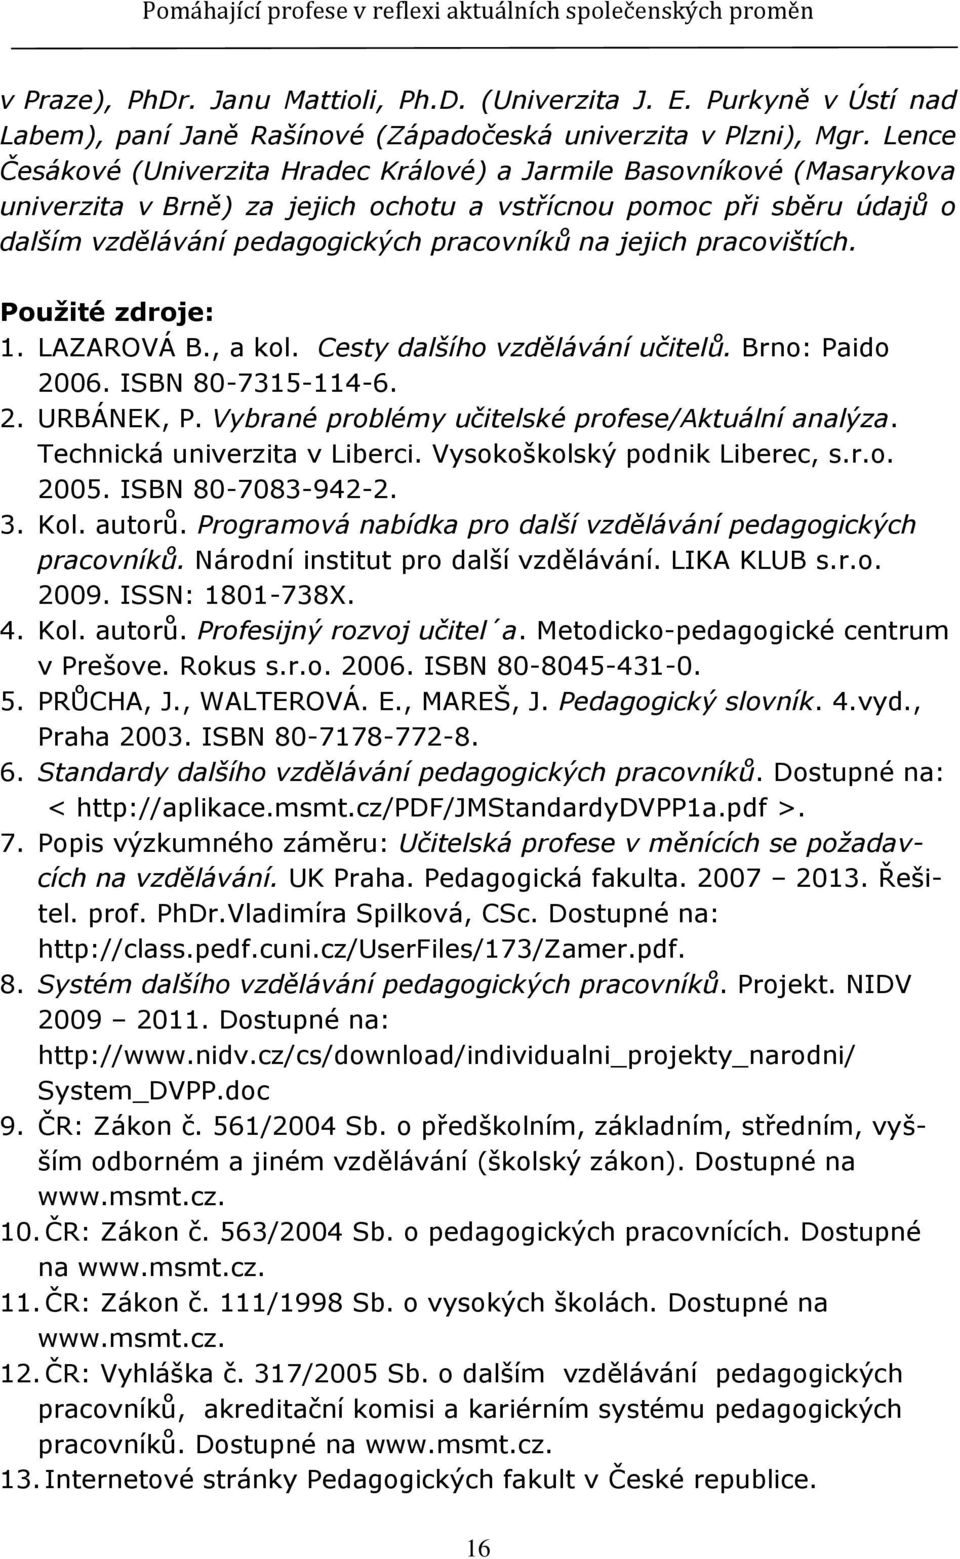 jejich pracovištích. Pouţité zdroje: 1. LAZAROVÁ B., a kol. Cesty dalšího vzdělávání učitelů. Brno: Paido 2006. ISBN 80-7315-114-6. 2. URBÁNEK, P. Vybrané problémy učitelské profese/aktuální analýza.